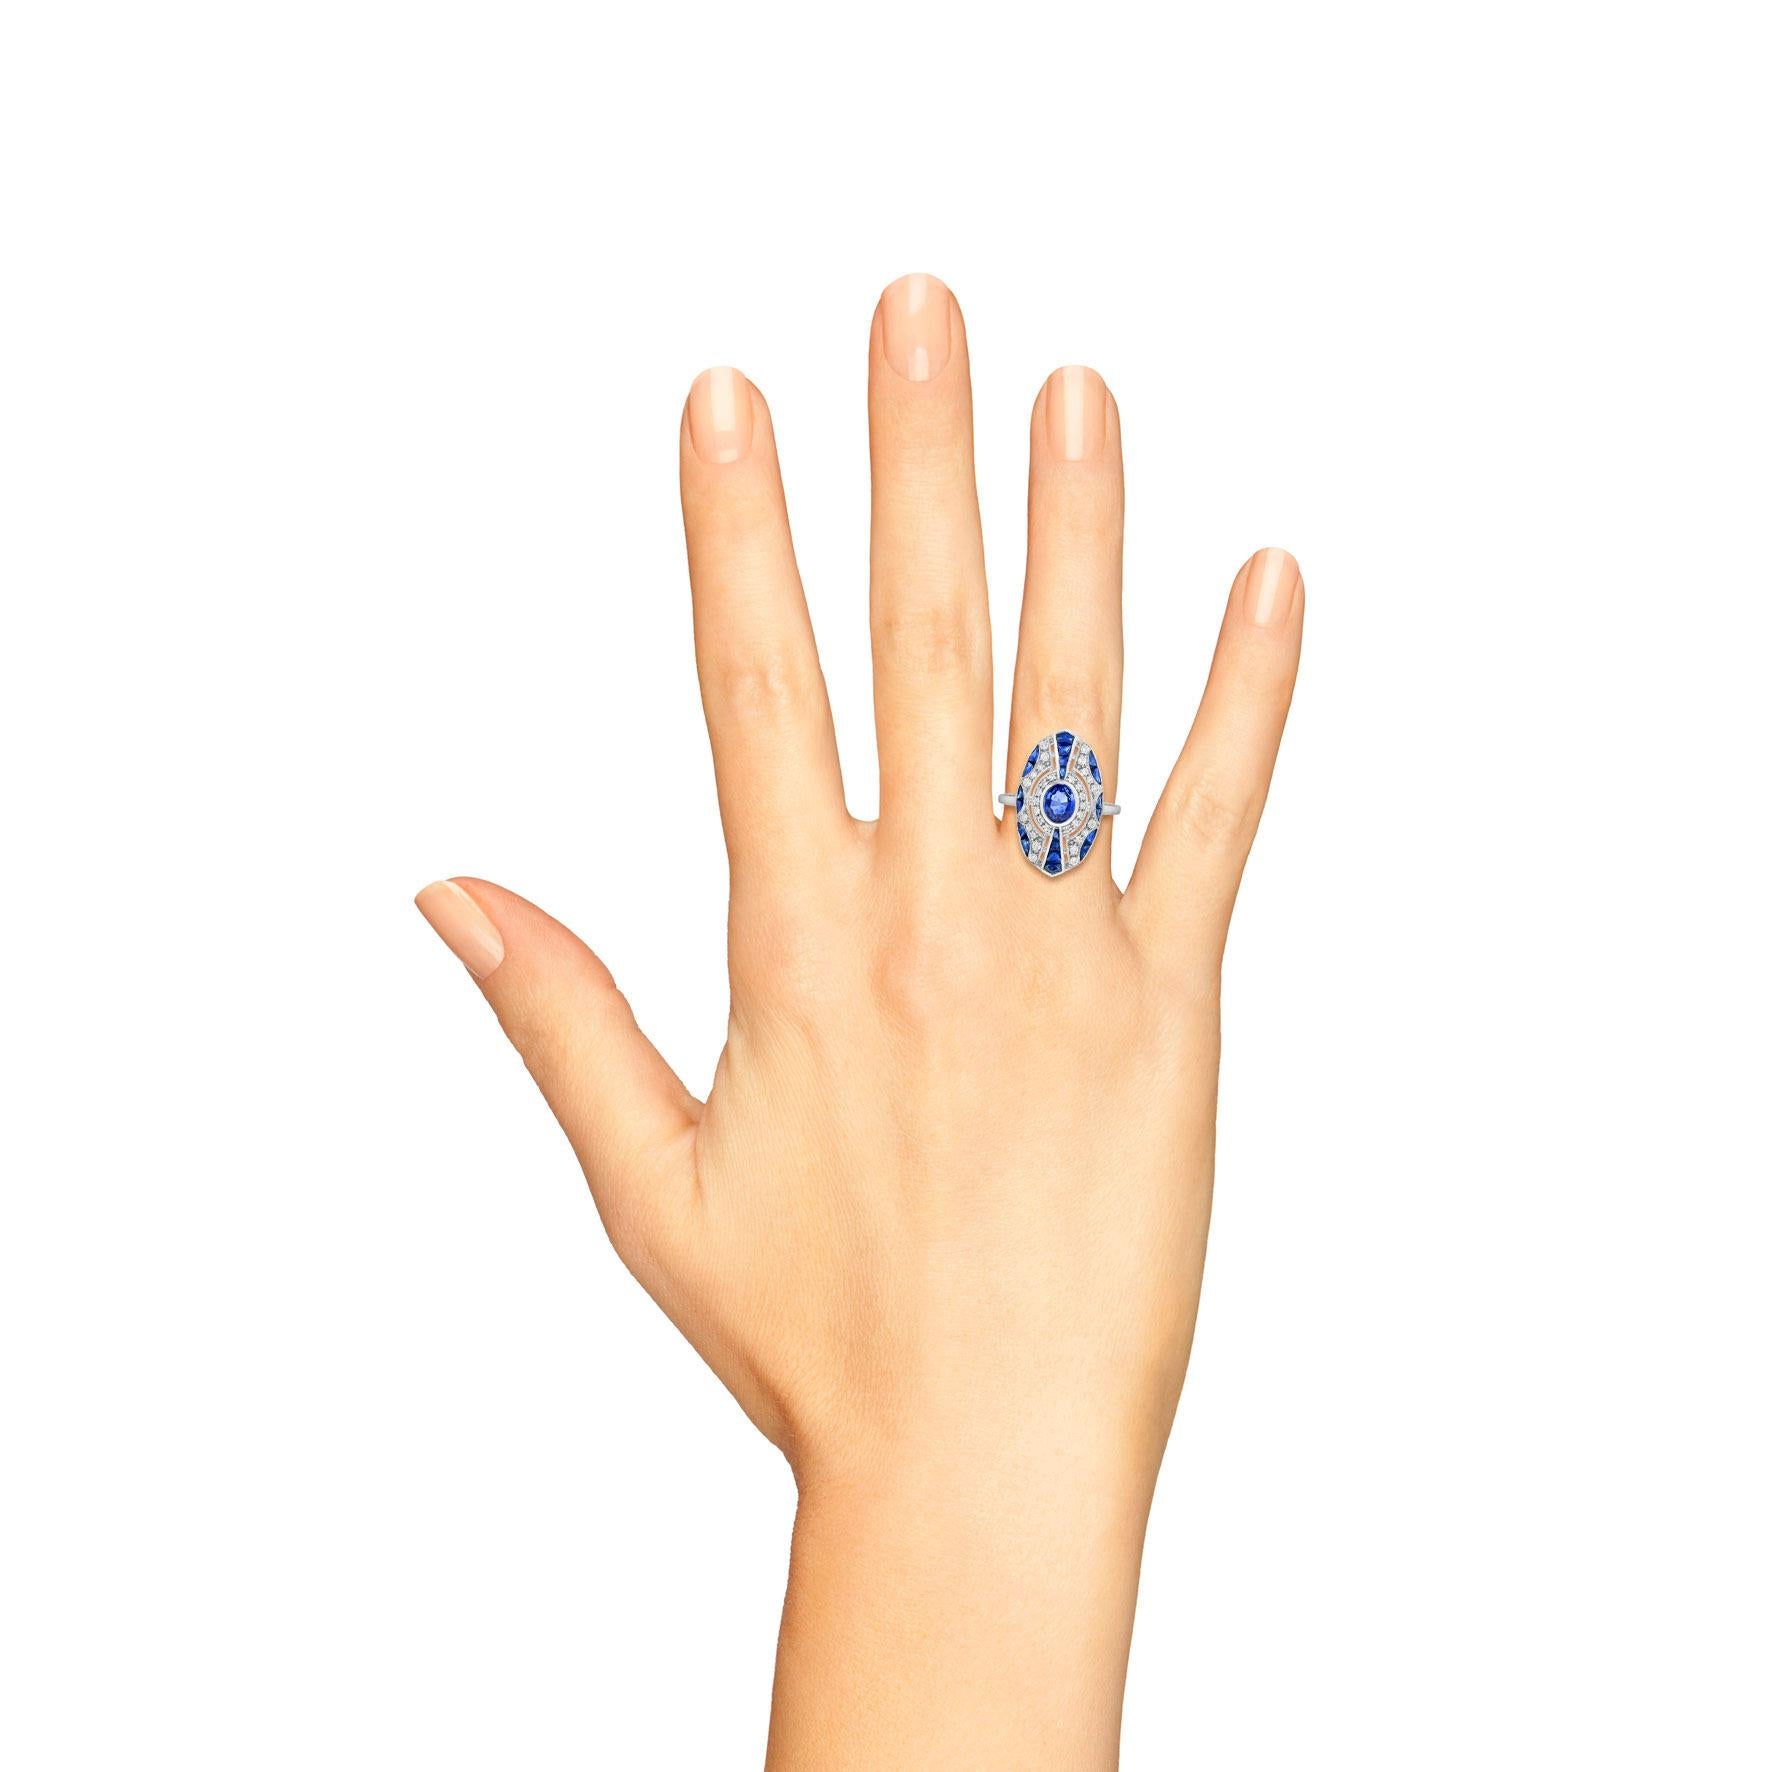 Un saphir bleu de Ceylan, pesant 0,85 carats, brille au centre d'une bague de style Art déco à construction géométrique. La pierre précieuse est entourée de diamants ronds et de saphirs de taille française, accentués par un ajourage décoratif et de